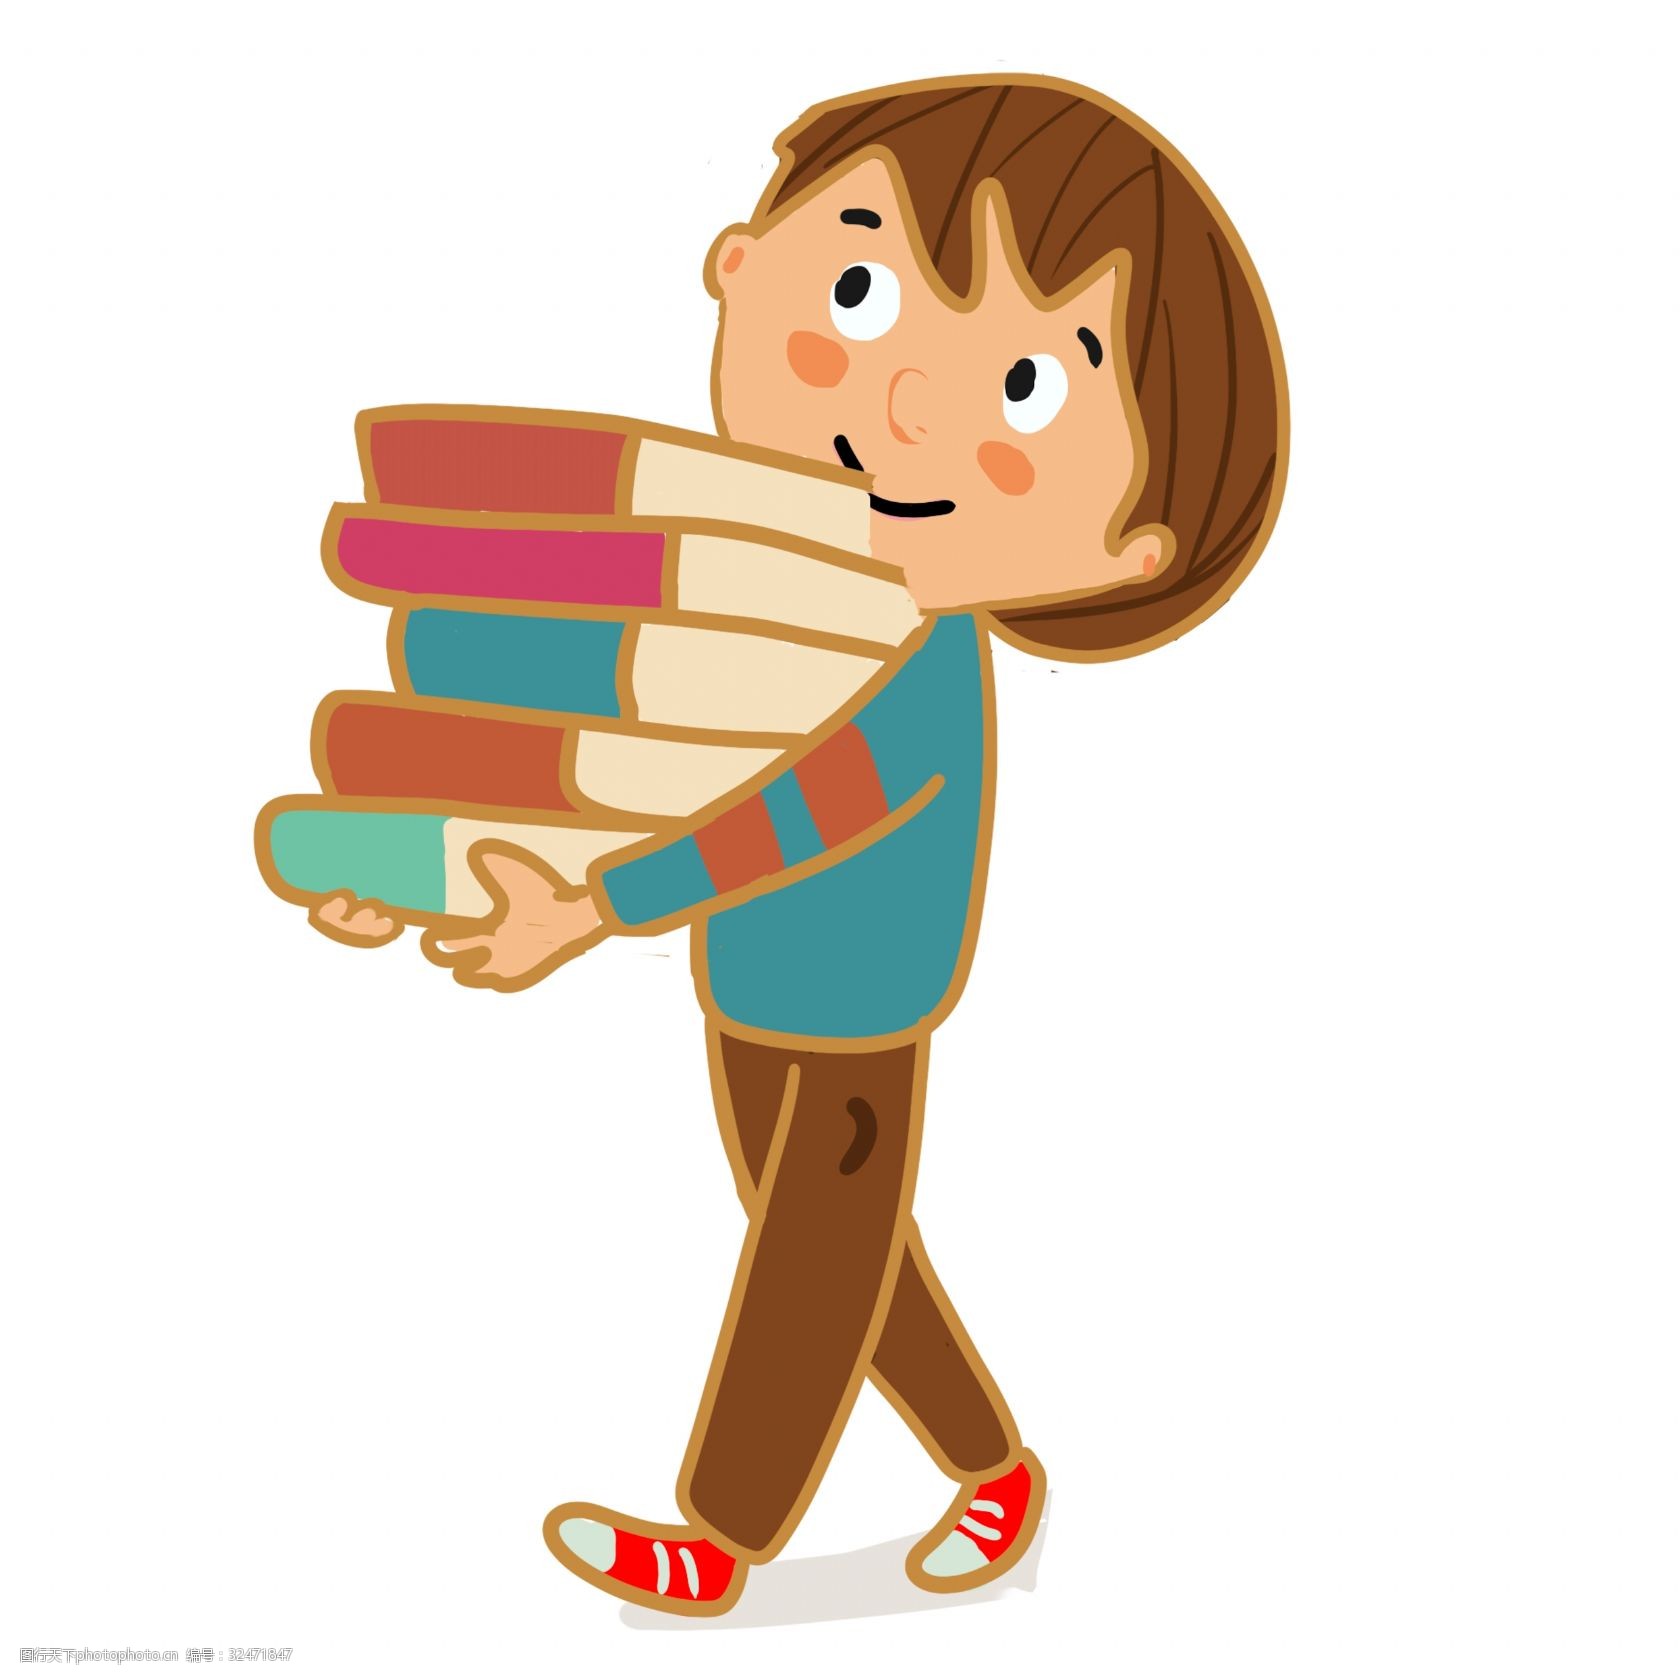 抱着书的卡通小男孩